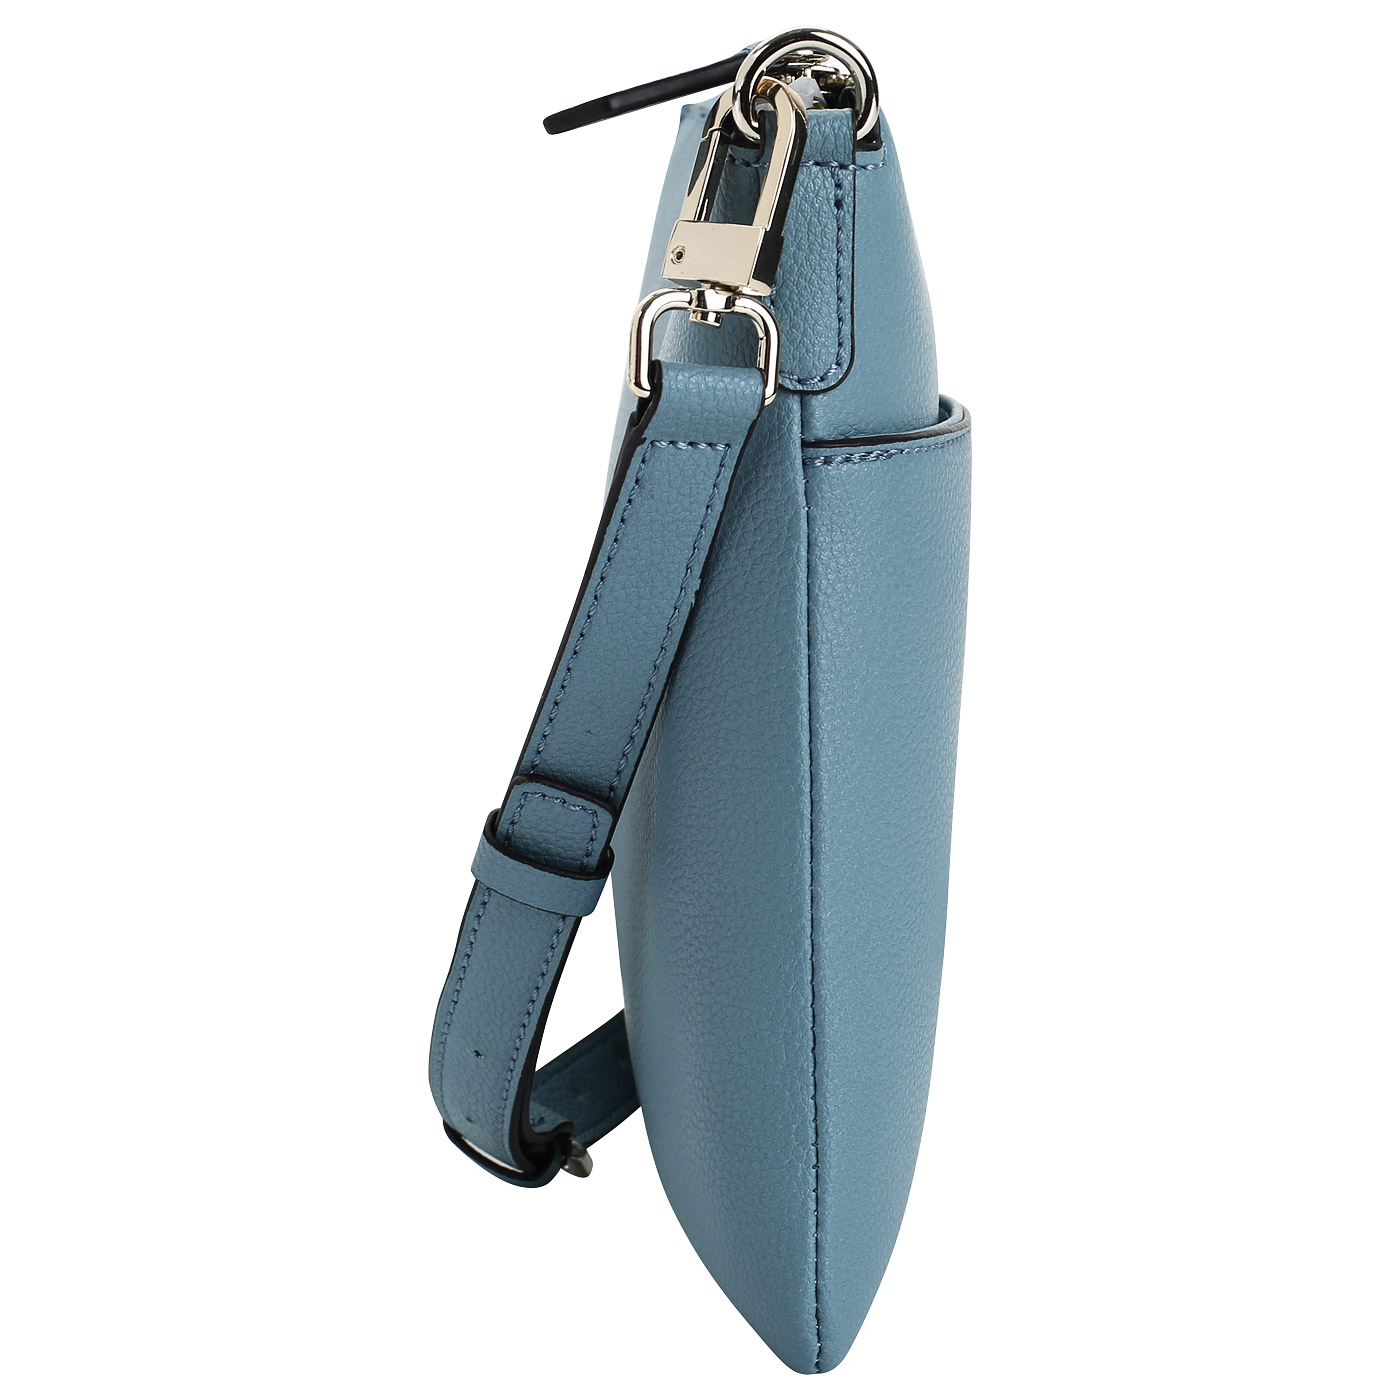 Женская сумочка голубого цвета Guess Digital